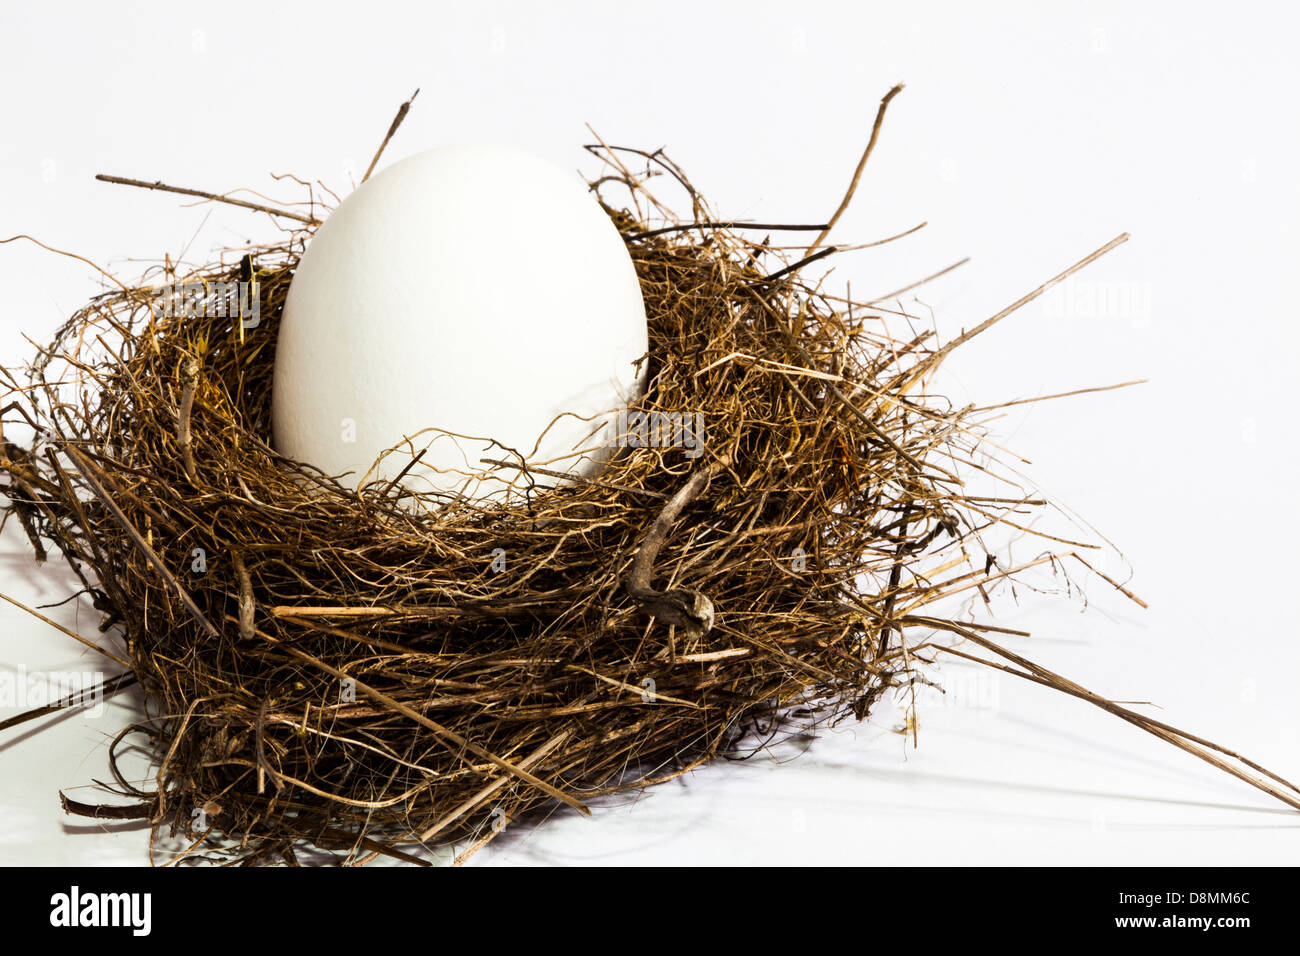 Manche Dinge passen einfach nicht. Huhn Ei in einem natürlichen kleinen Vogel-Nest. Stockfoto